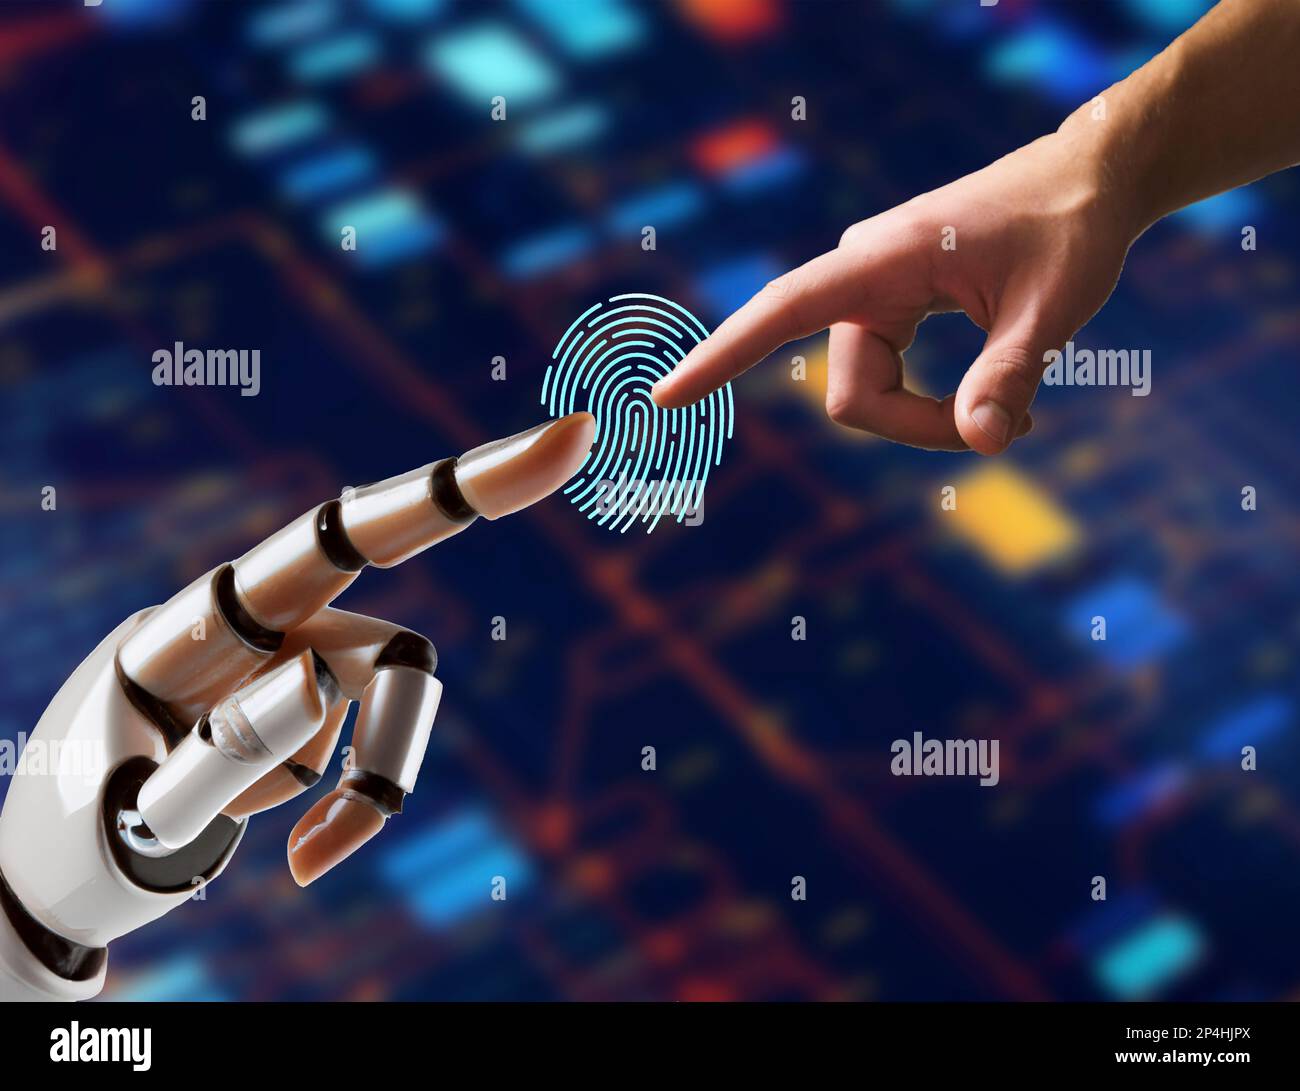 Une main de robot pointe vers une main humaine. Concept d'intelligence artificielle. Banque D'Images